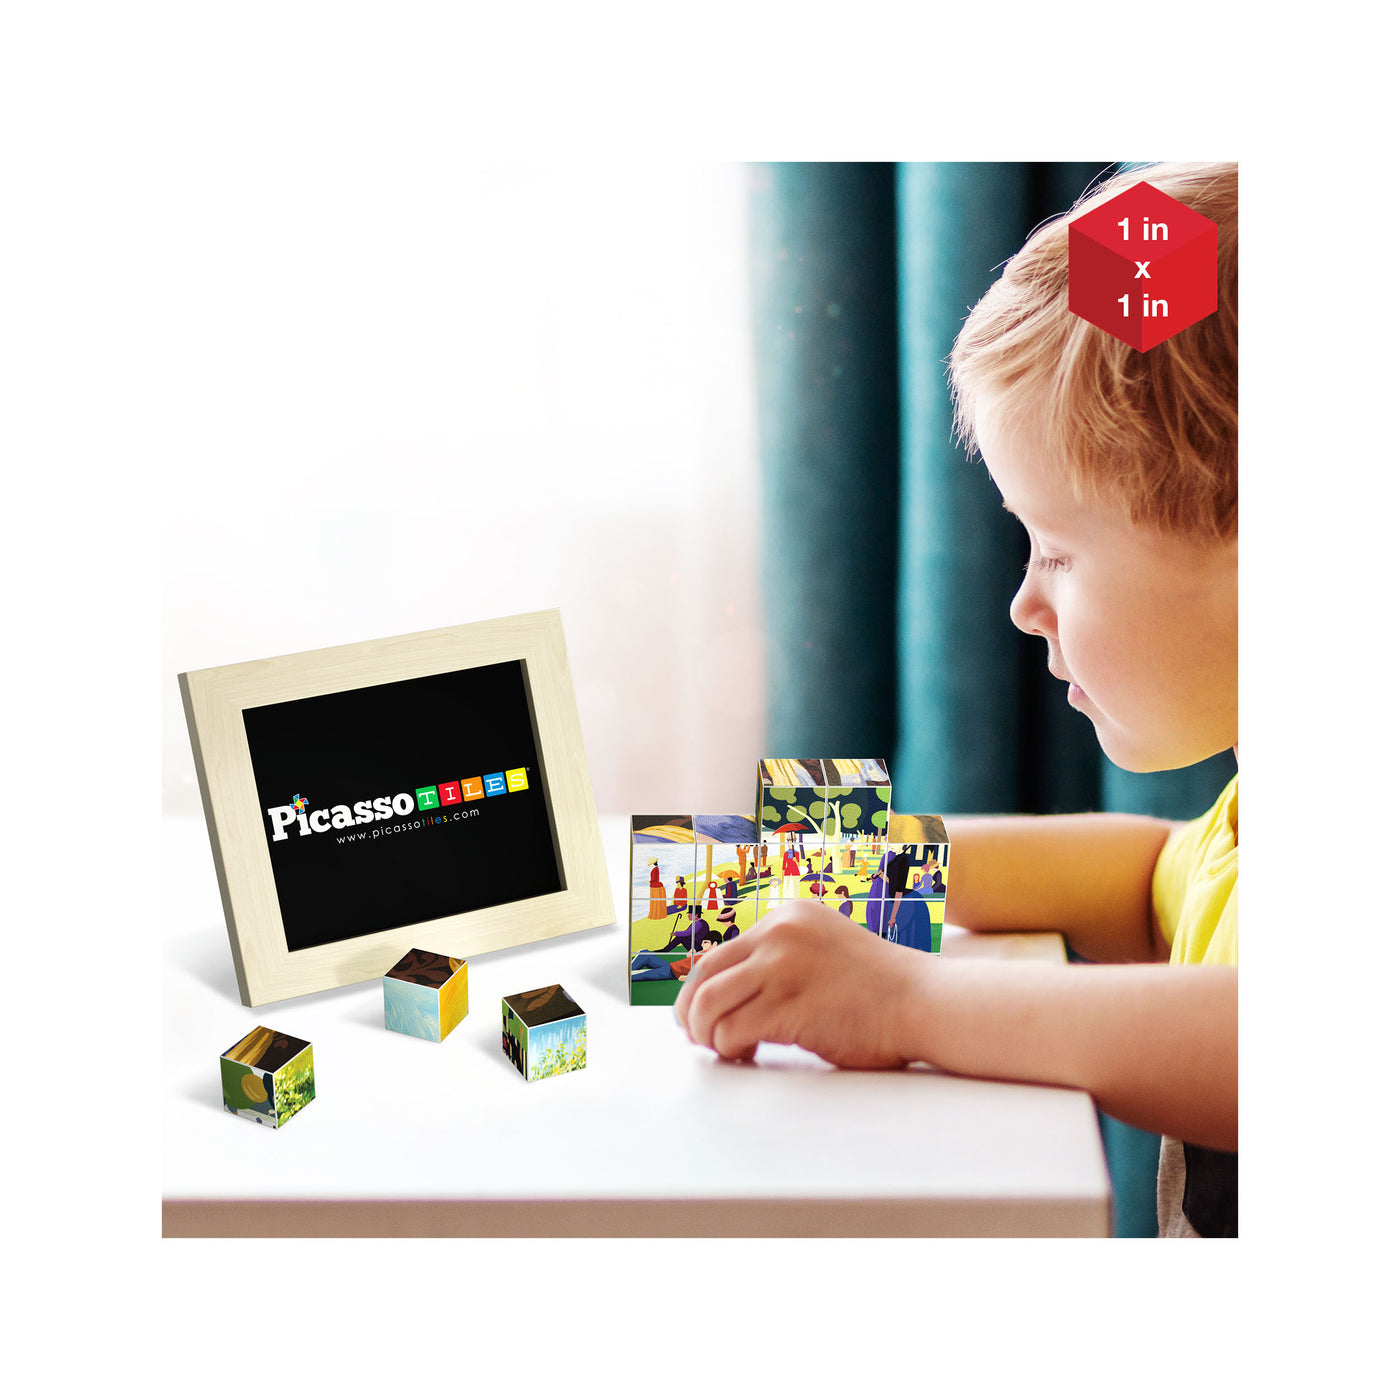 PicassoTiles 20pc 1" Magnetic Puzzle Cubes World Famous Paintings Set